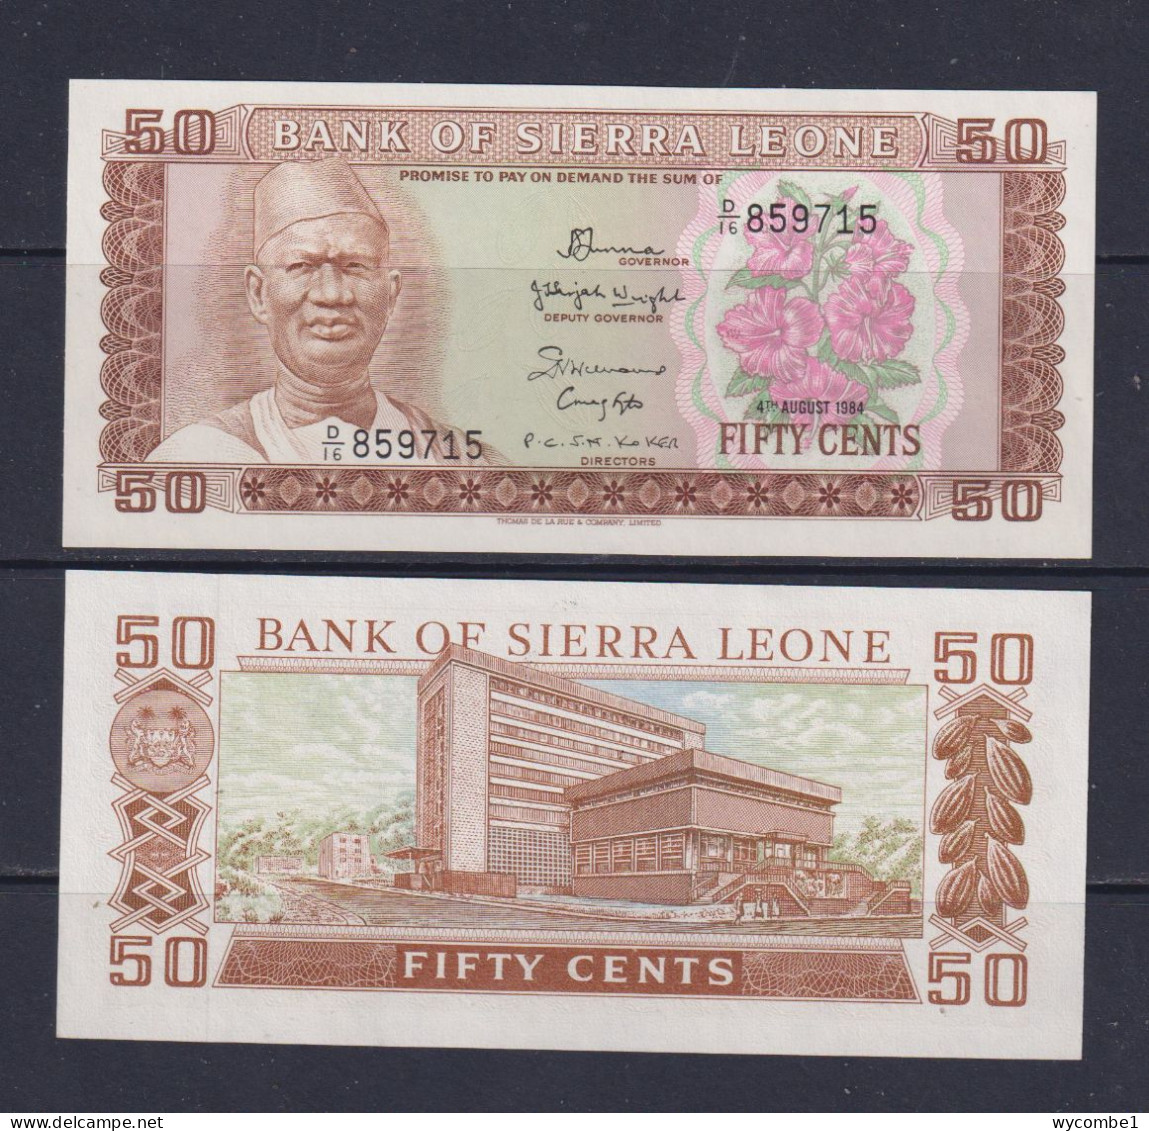 SIERRA LEONE -  1984 50 Cents UNC  Banknote - Sierra Leone